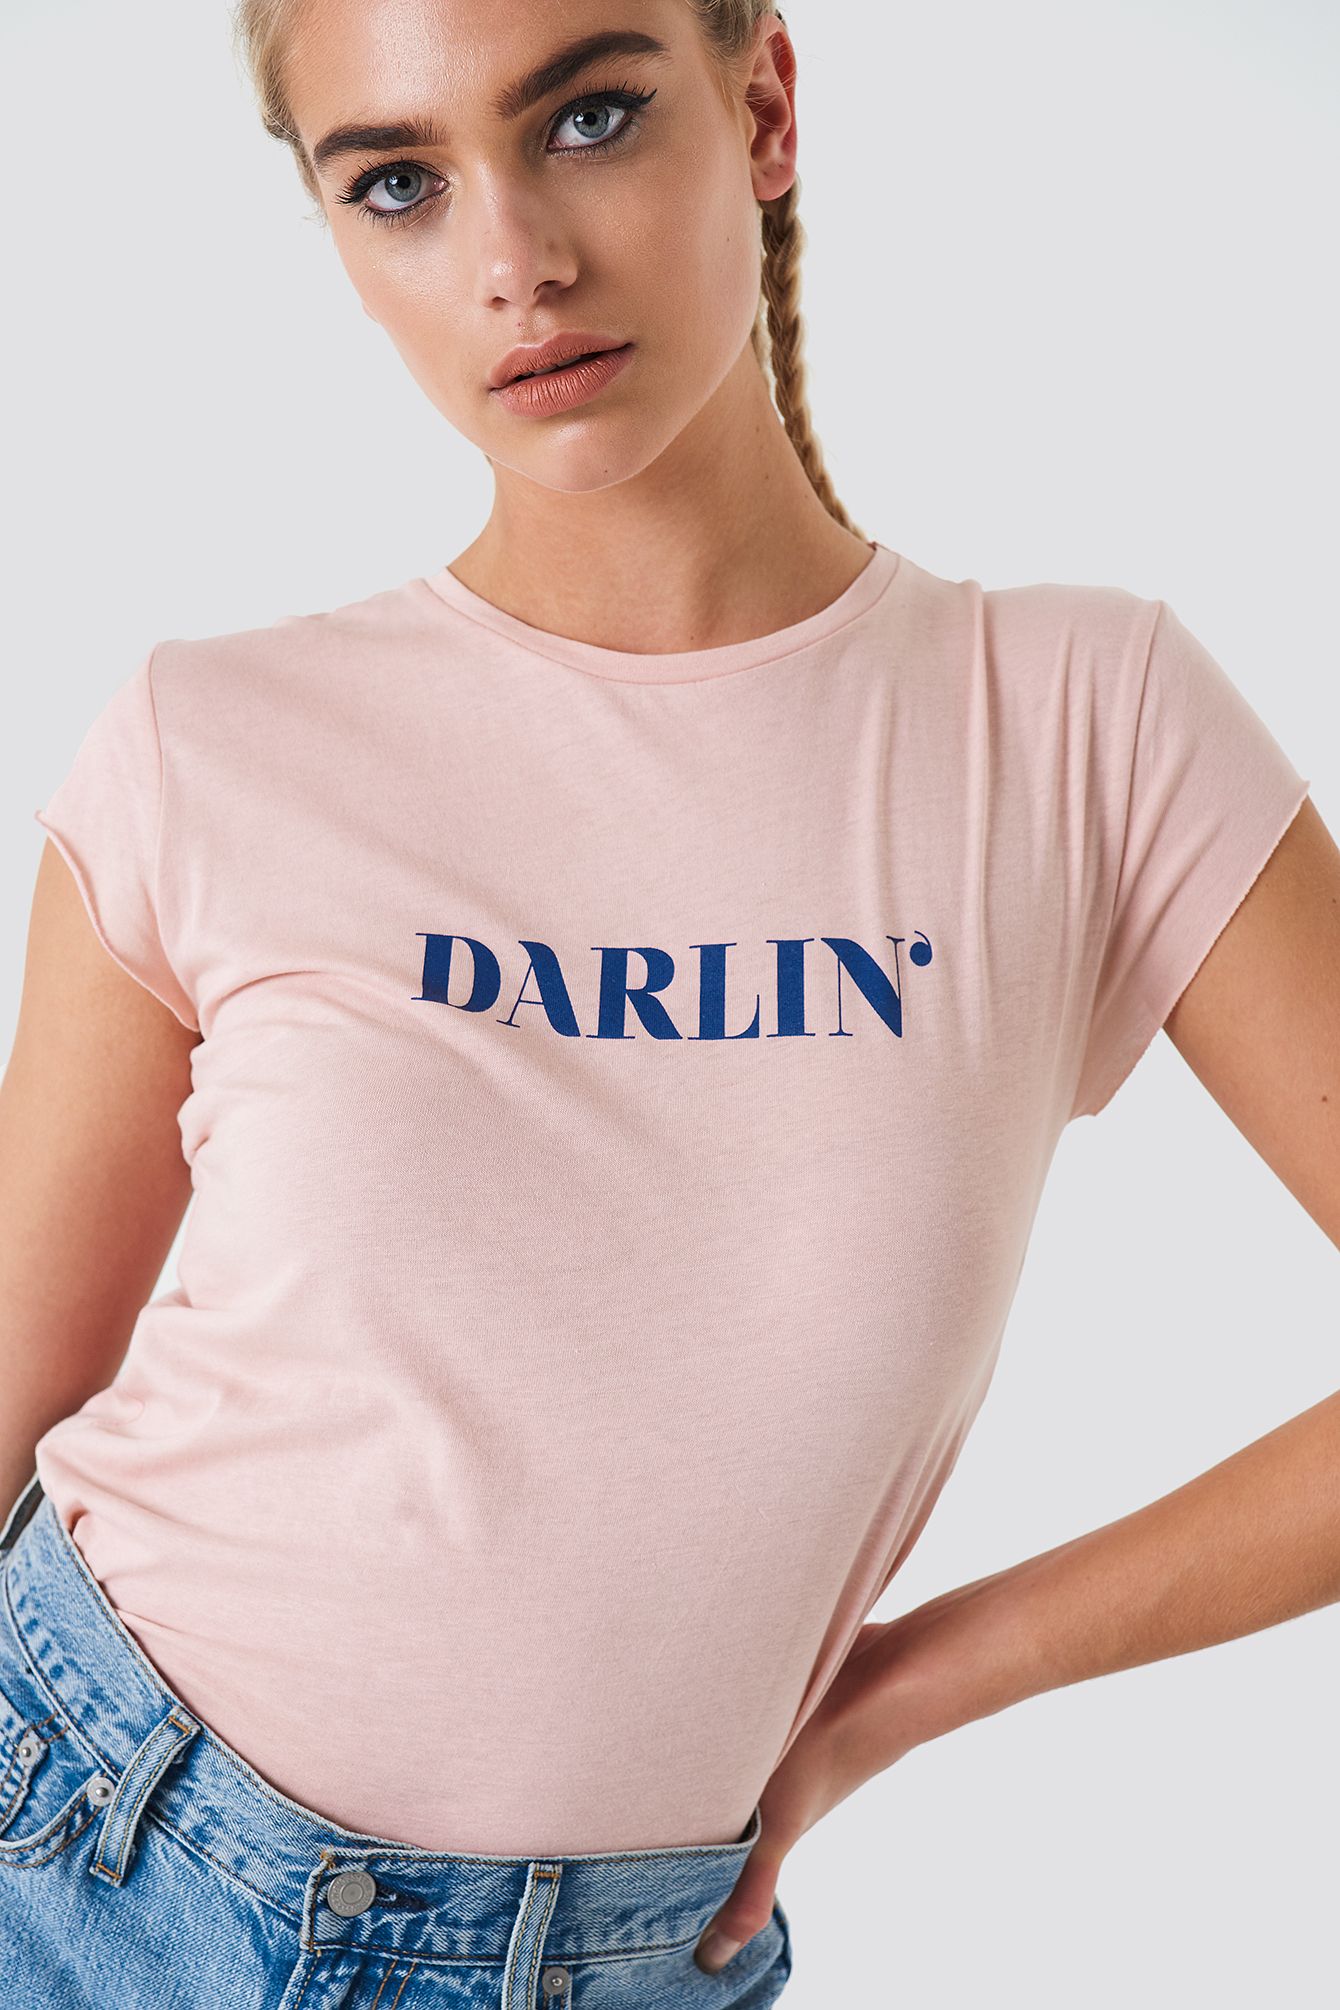 Darlin' Tee | NA-KD Global